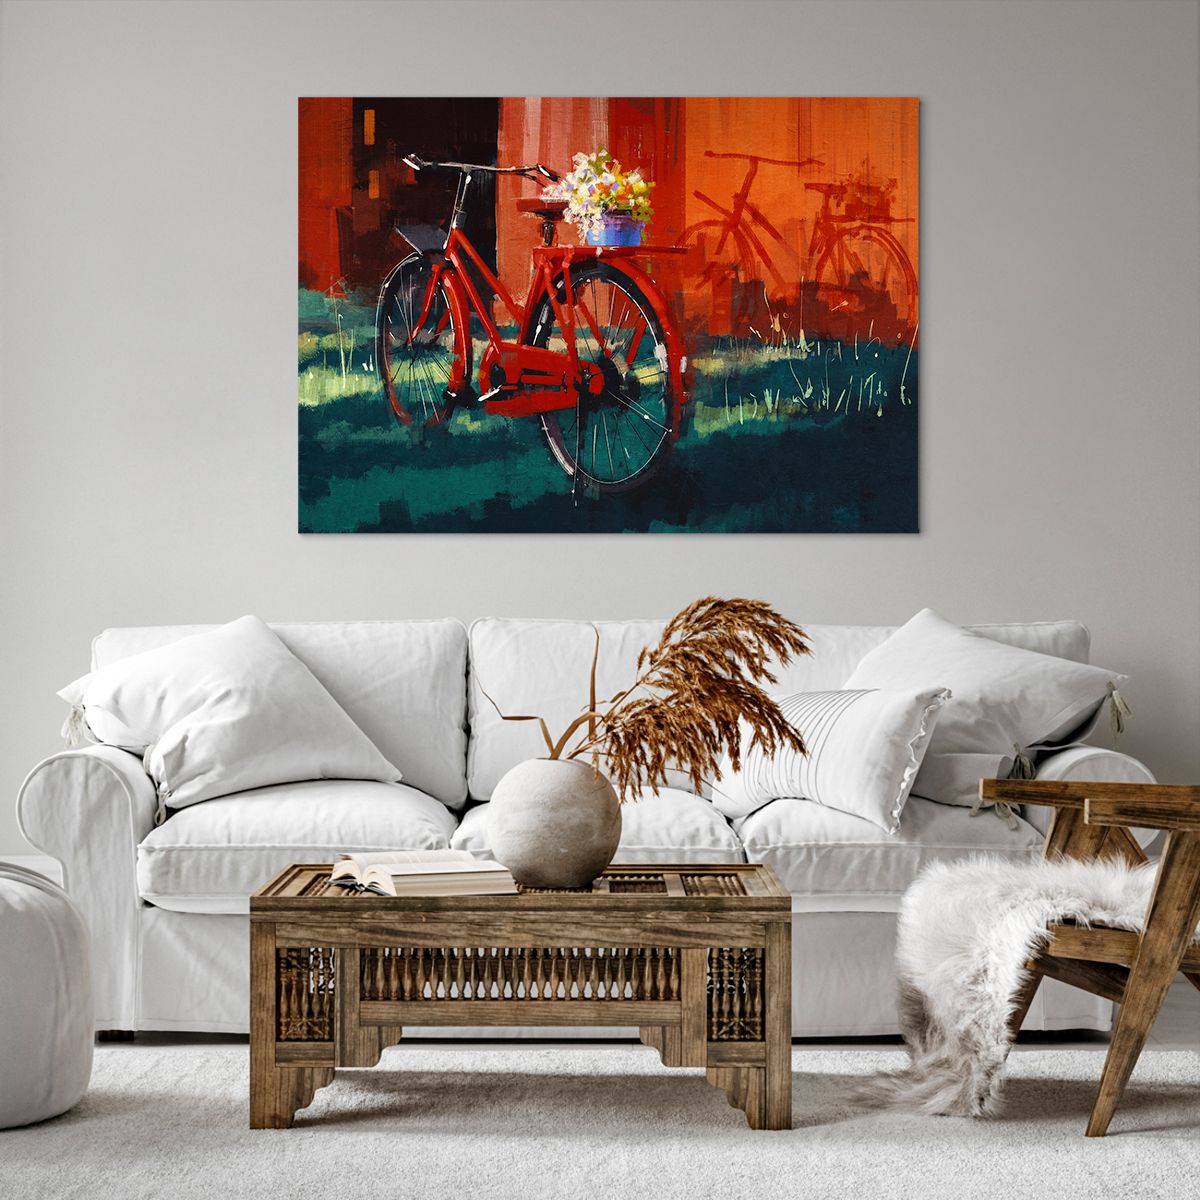 Bild auf Leinwand Oldtimer-Fahrrad, Bild auf Leinwand Blumen Im Topf, Bild auf Leinwand Reise, Bild auf Leinwand Kunst, Bild auf Leinwand Malerei